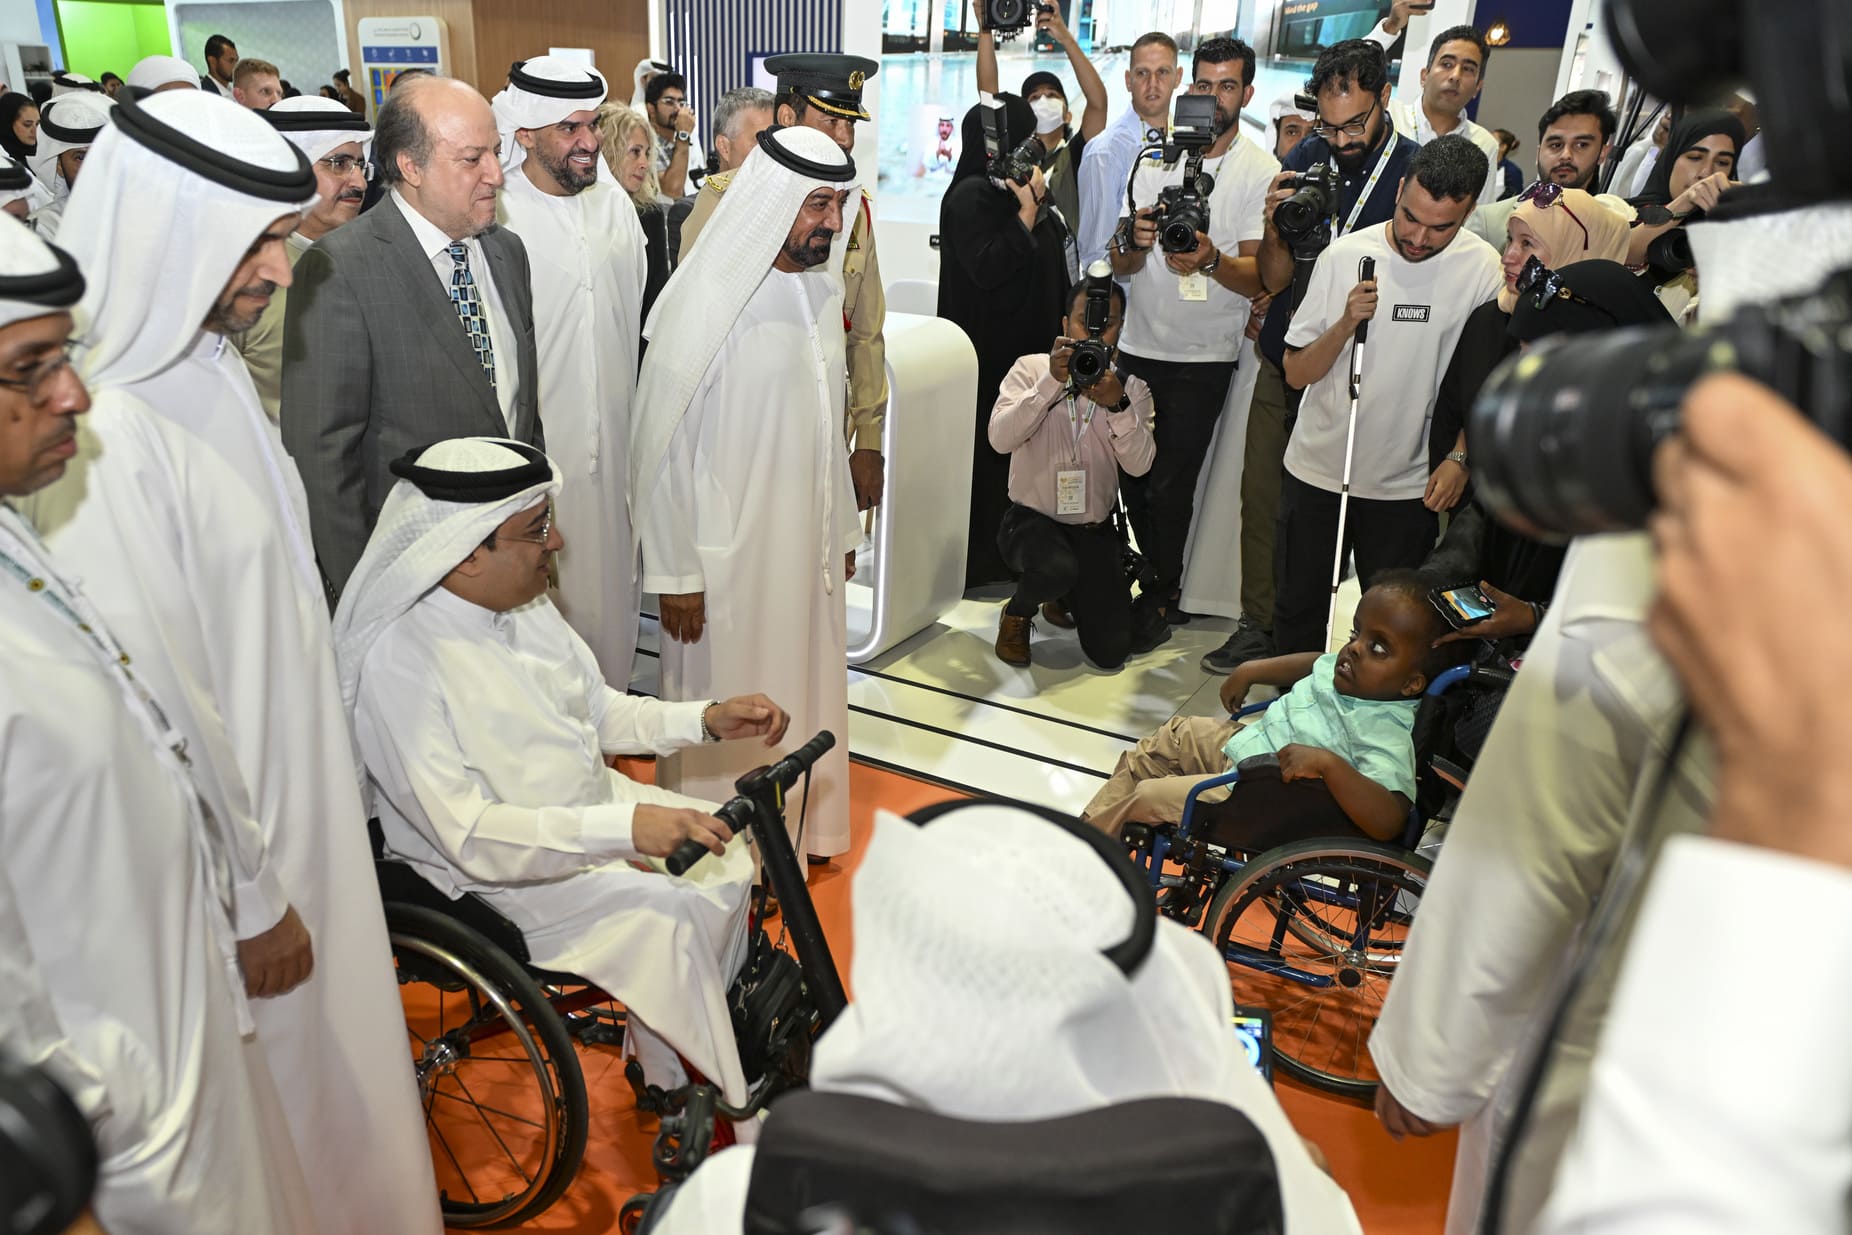 AccessAbilities Expo, Dubai, United Arab Emirates